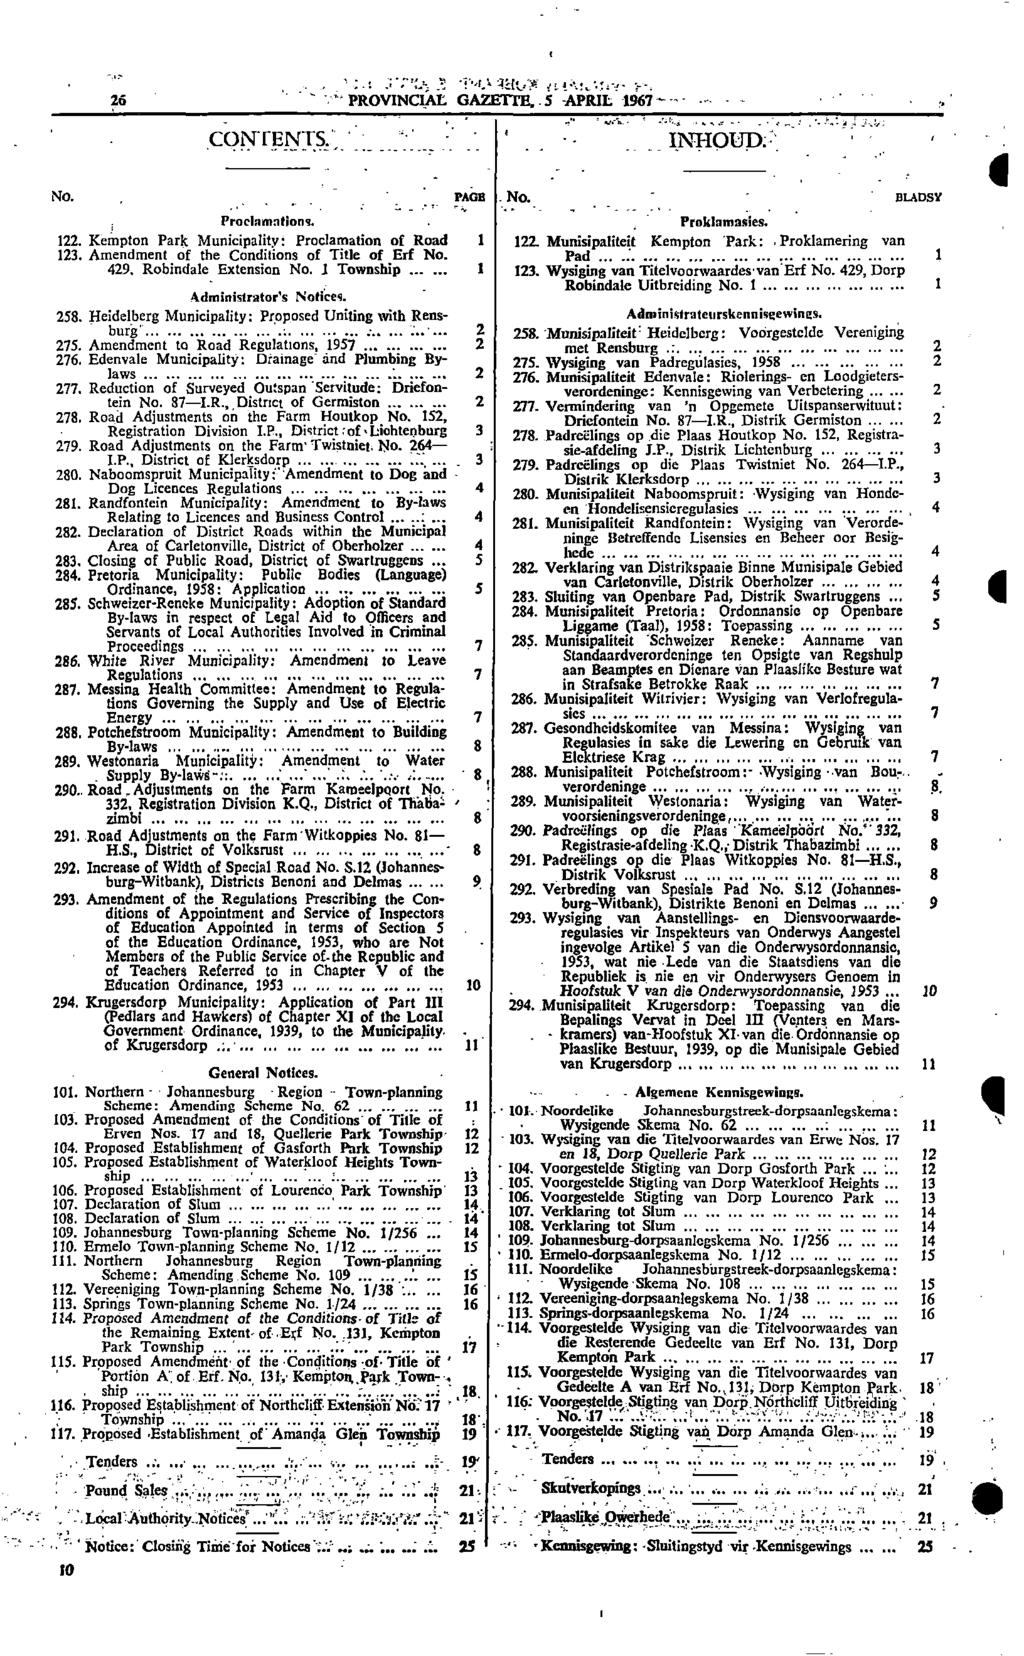 Ed 26 PROVINCIAL GAZETTE5 APRIL 1967 _ INT:11013a; i CON CENTS No Pane No WADS?